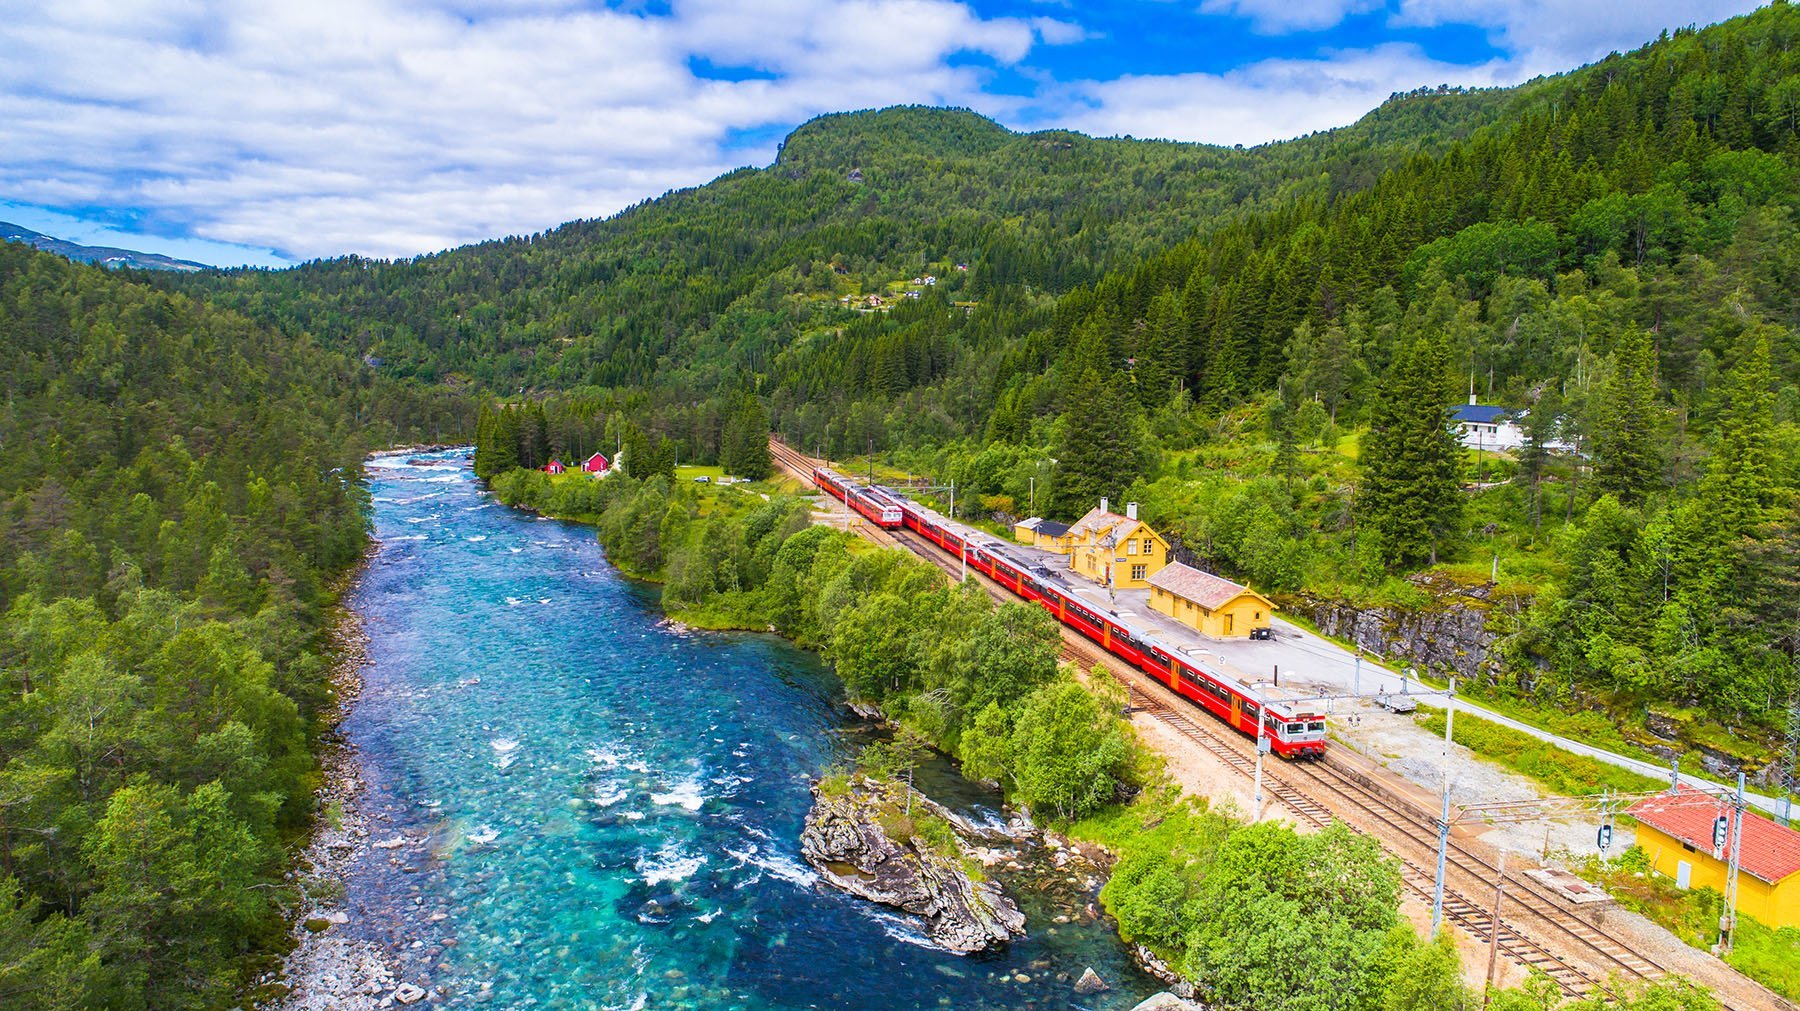 Norwegian Bergen Line train departures may be cut